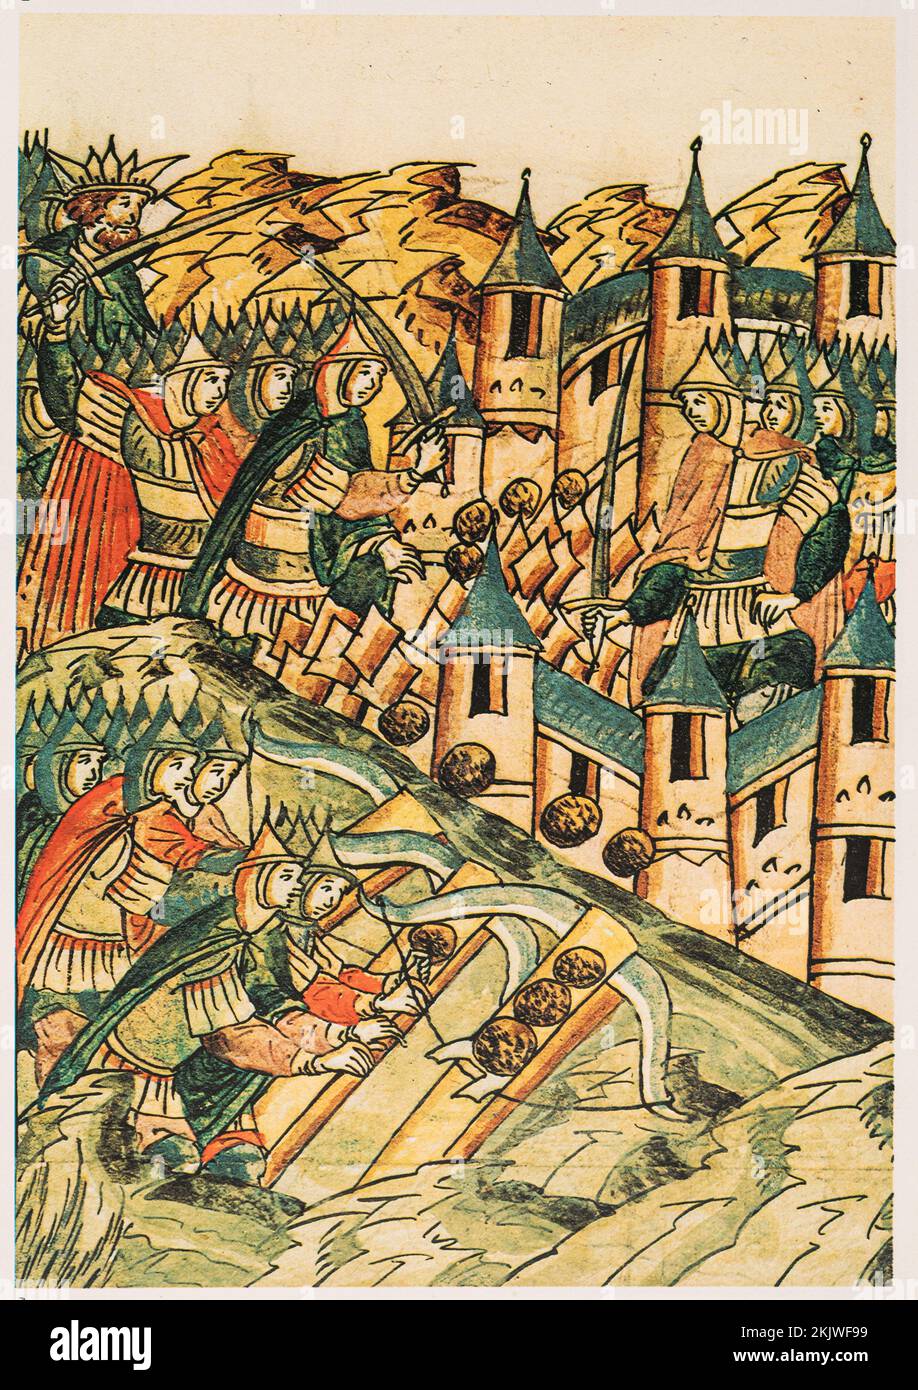 Batalla con Horda Cerca de las murallas de Kozelsk. 1237. Miniatura de los Anales del siglo 16th. Se hizo famoso en 1238, cuando City resistió a los mongoles durante 7 semanas. Era Foto de stock